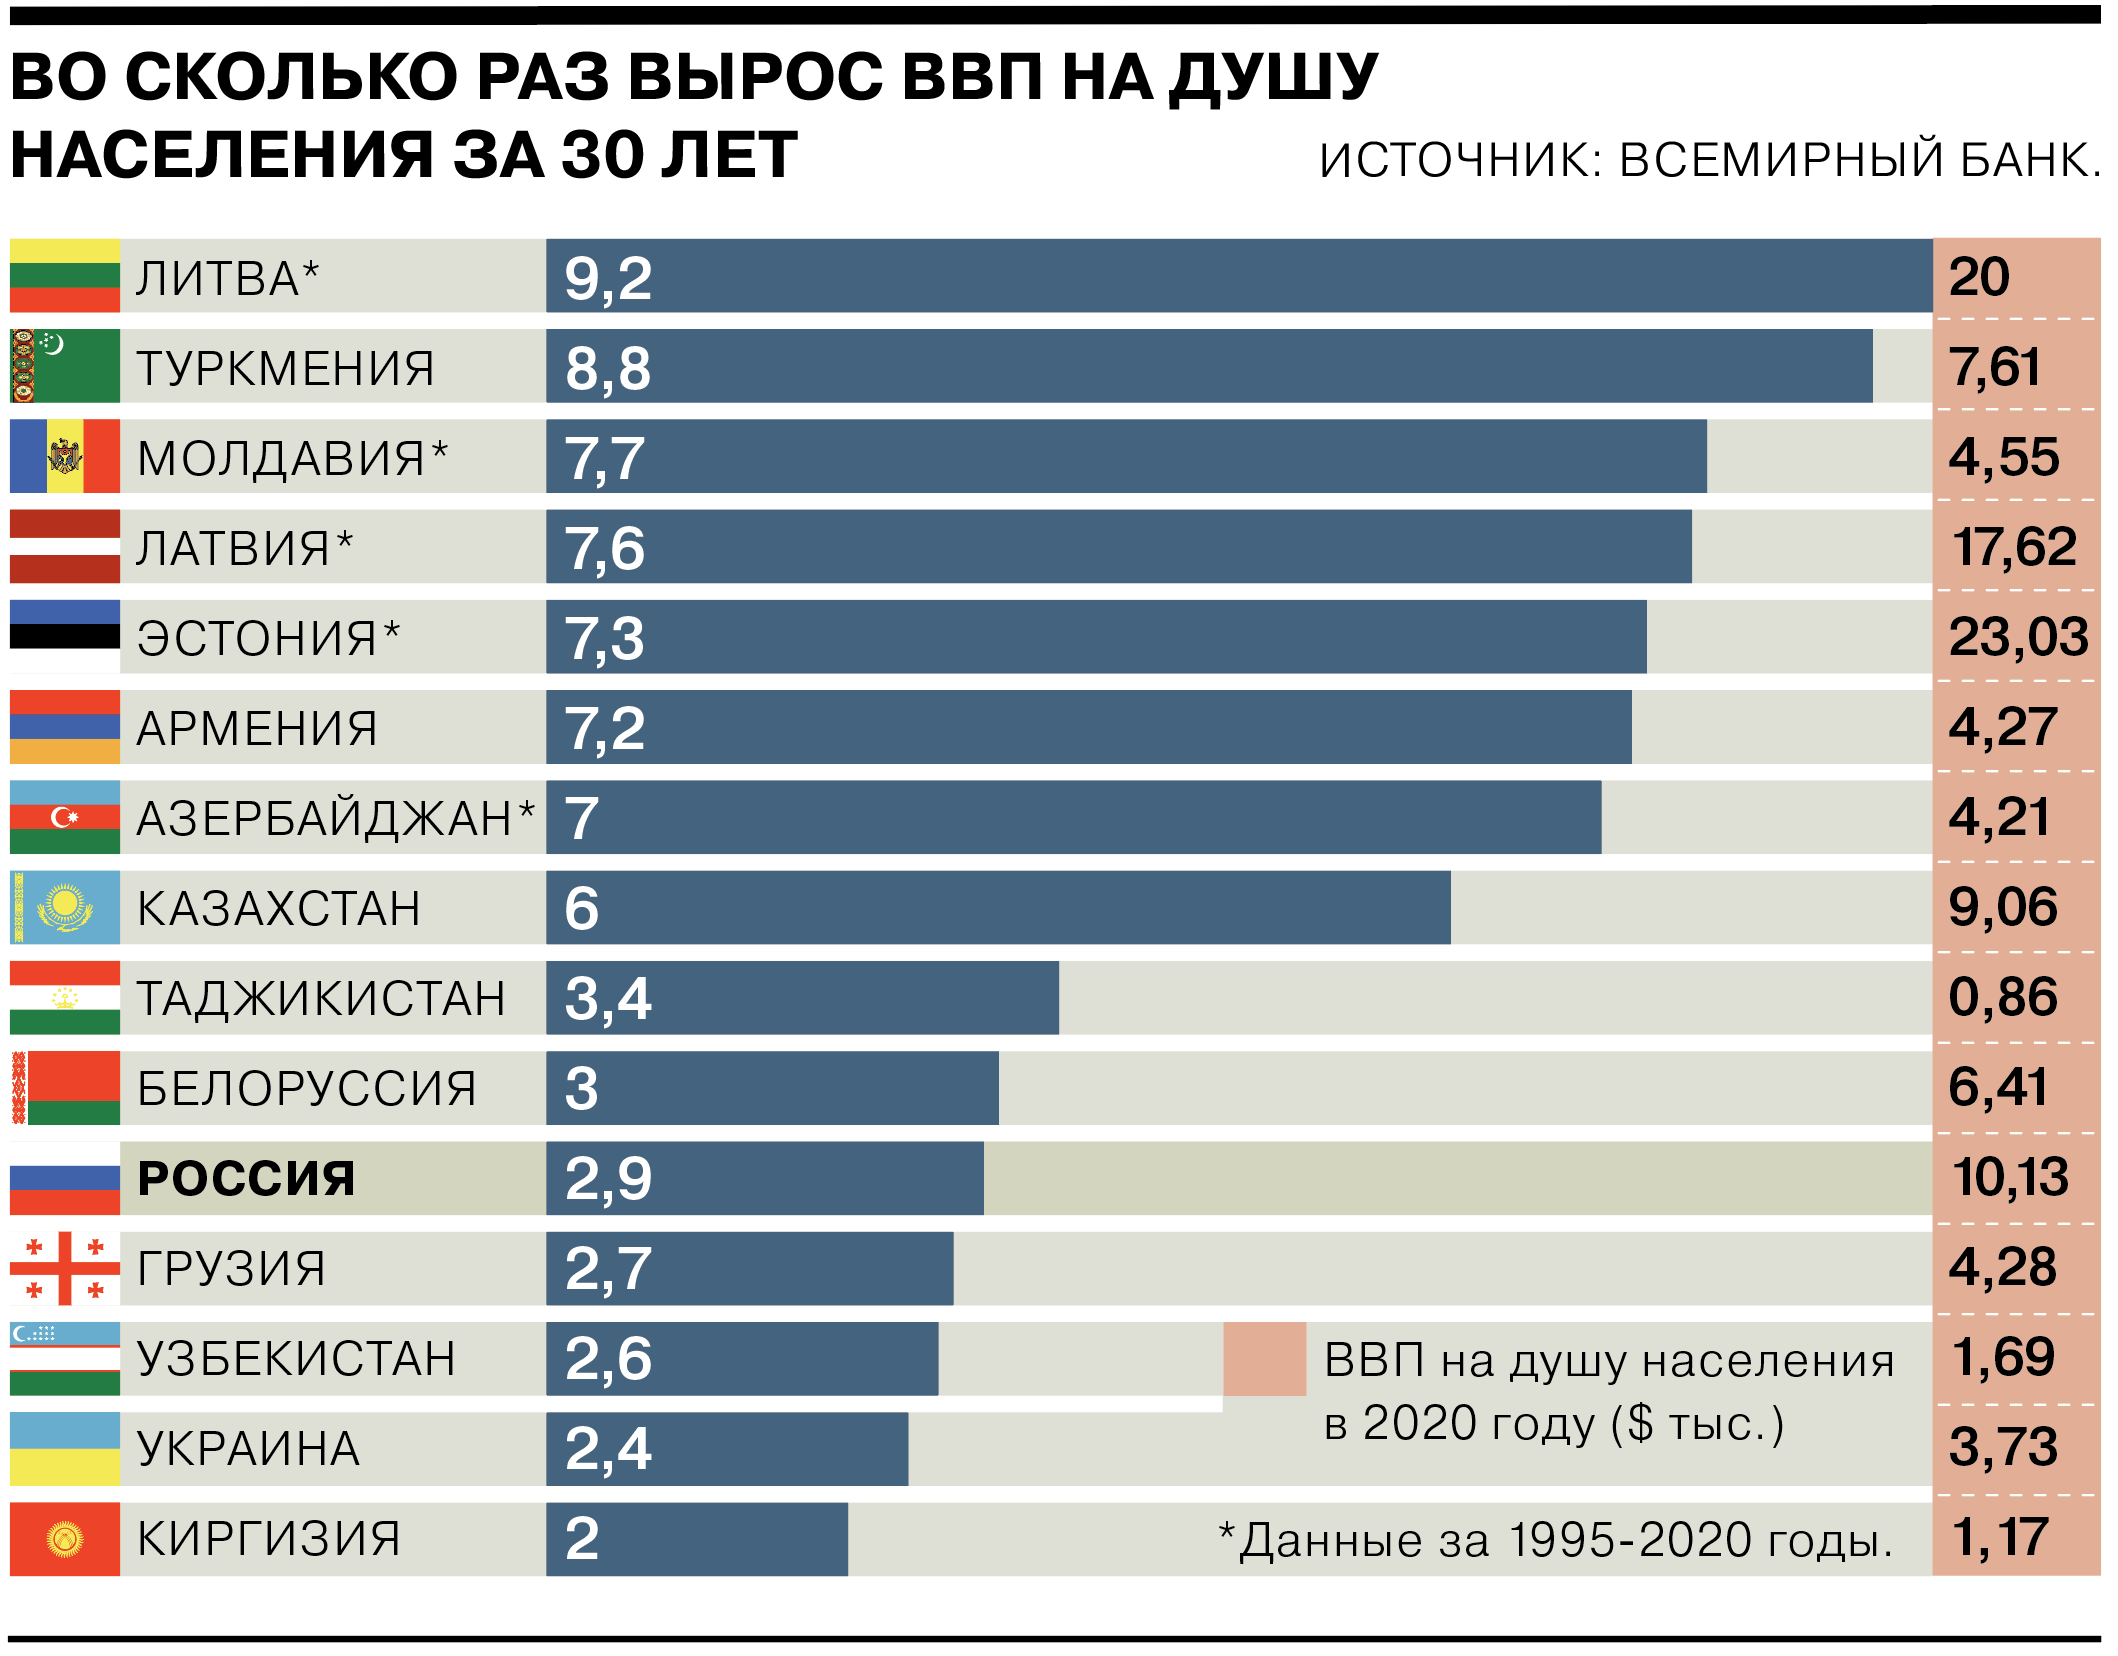 ВВП И ВВП на душу населения. ВВП на душу населения таблица. ВВП на душу населения в странах бывшего СССР. ВВП советских республик на душу населения.